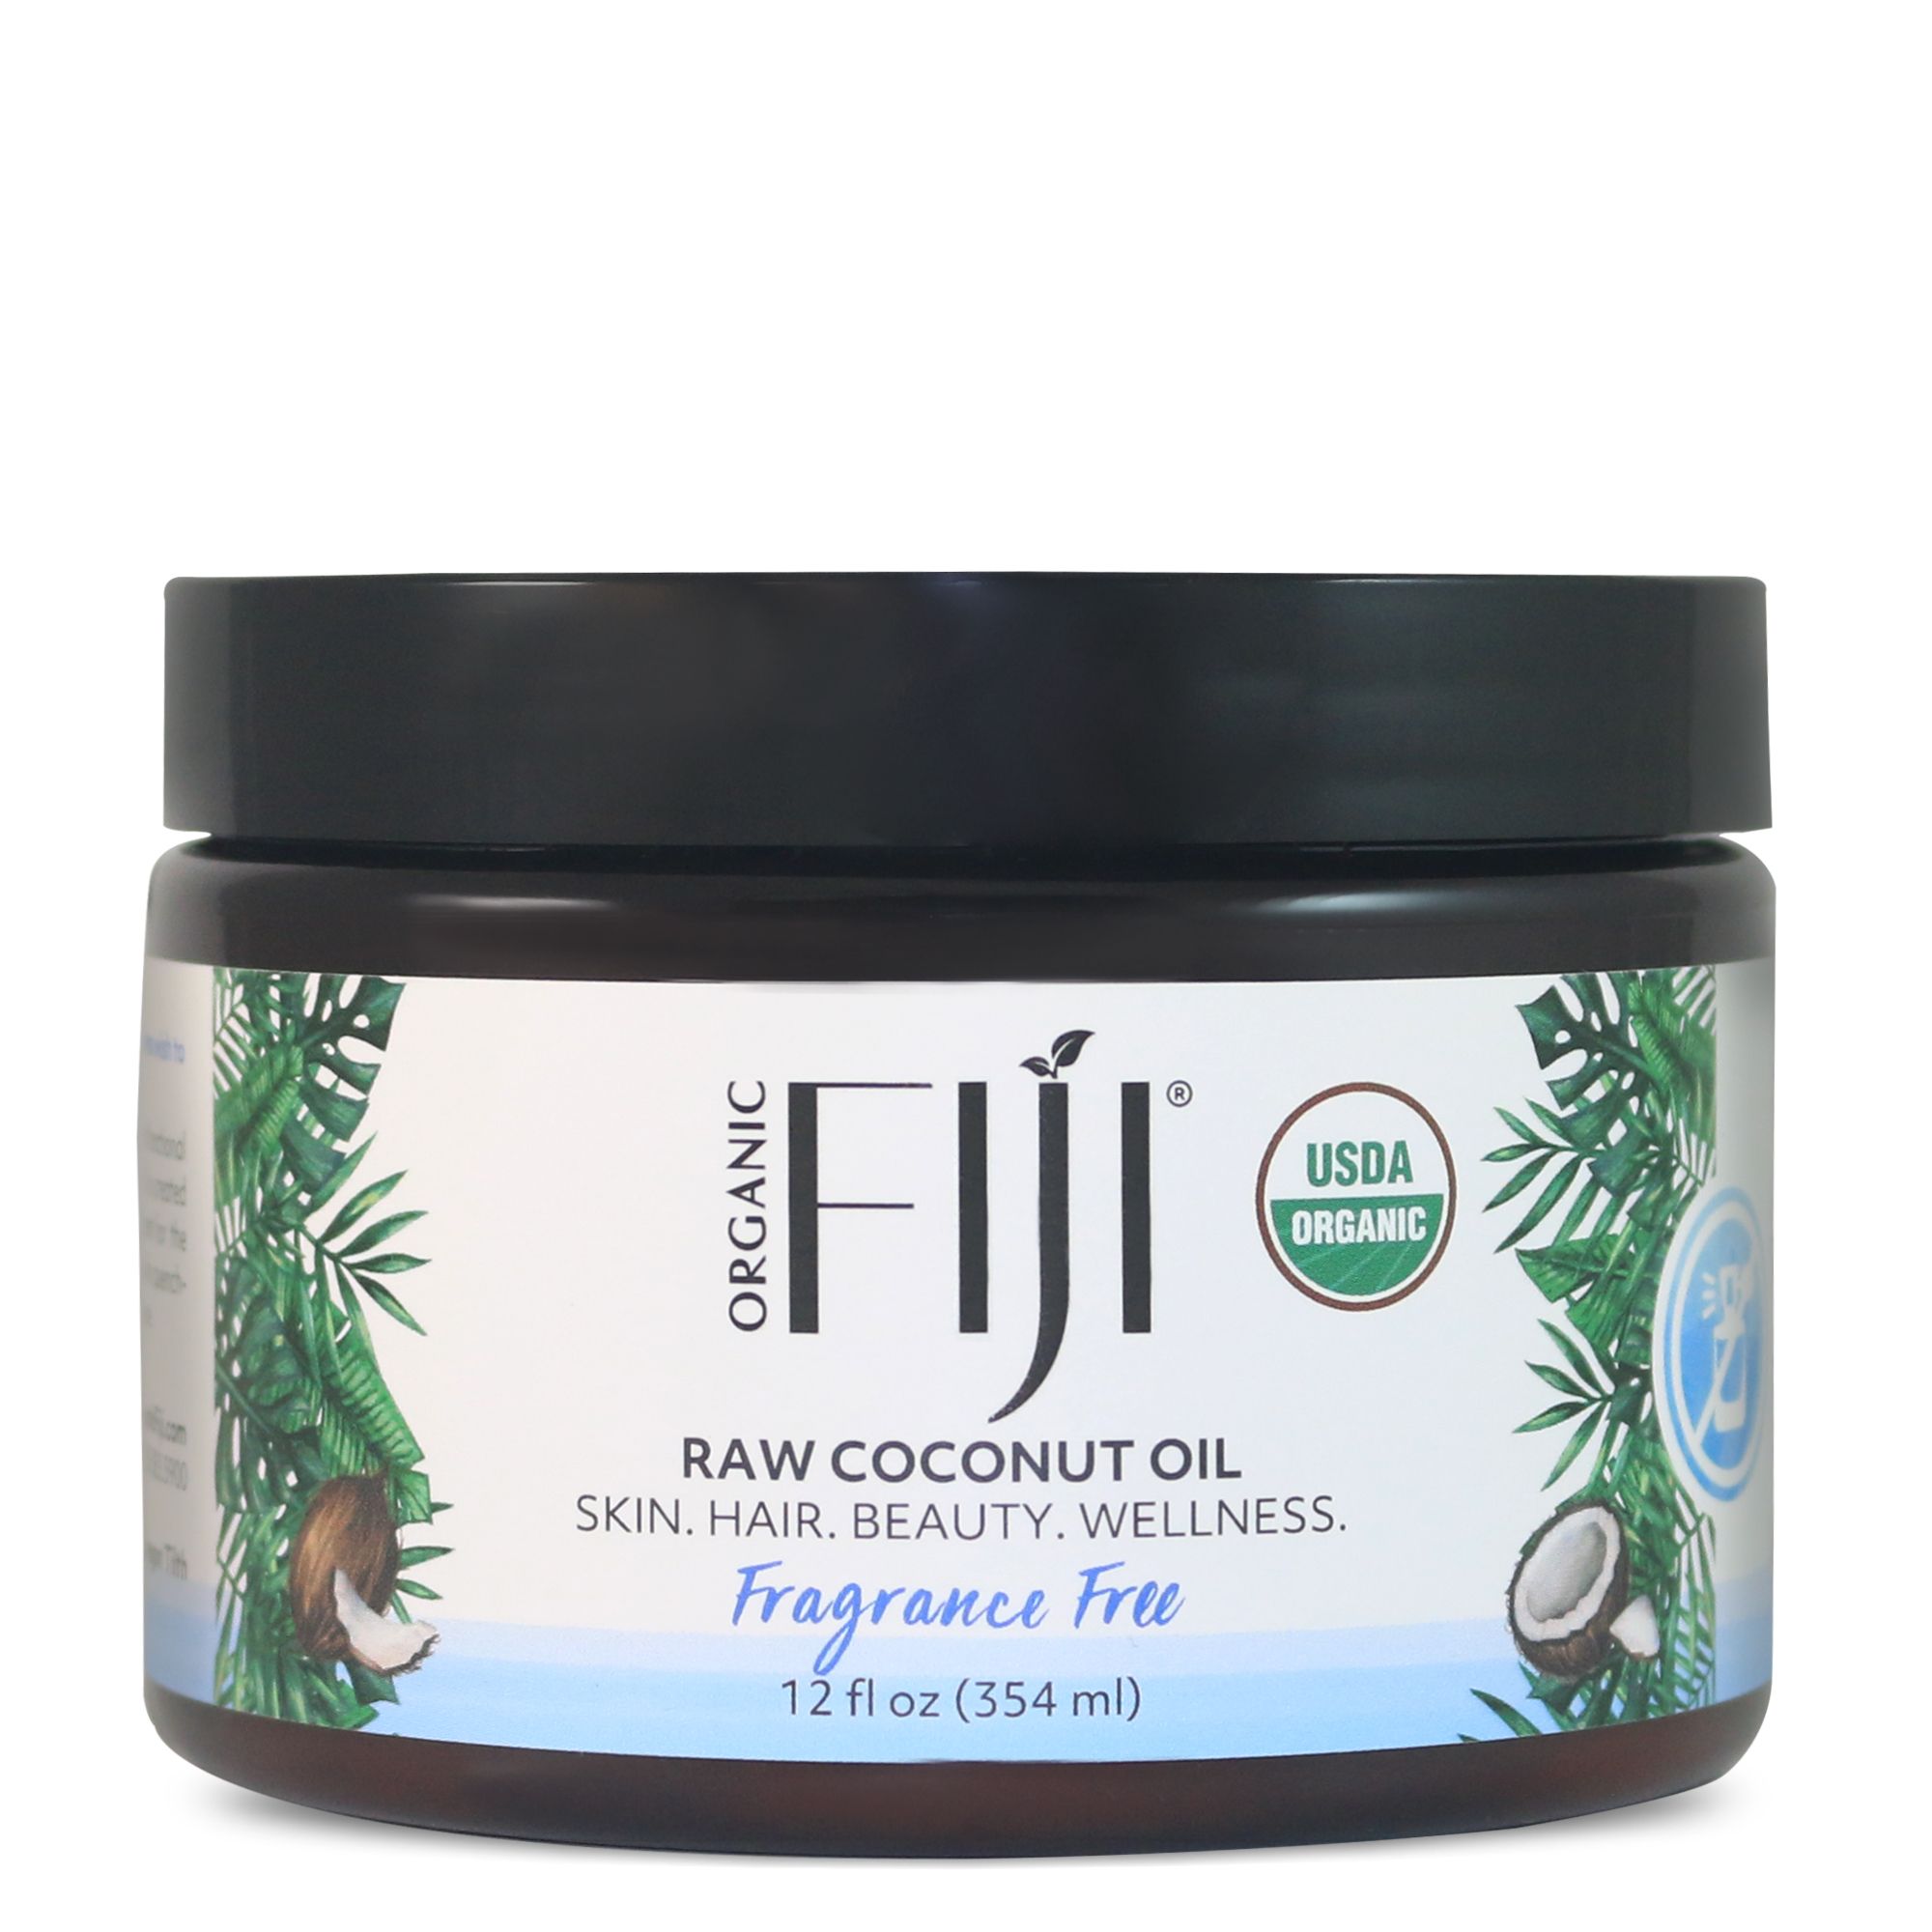 Picture of Organic Fiji Virgin Coconut Oil Fragrance Free - 12 fl oz